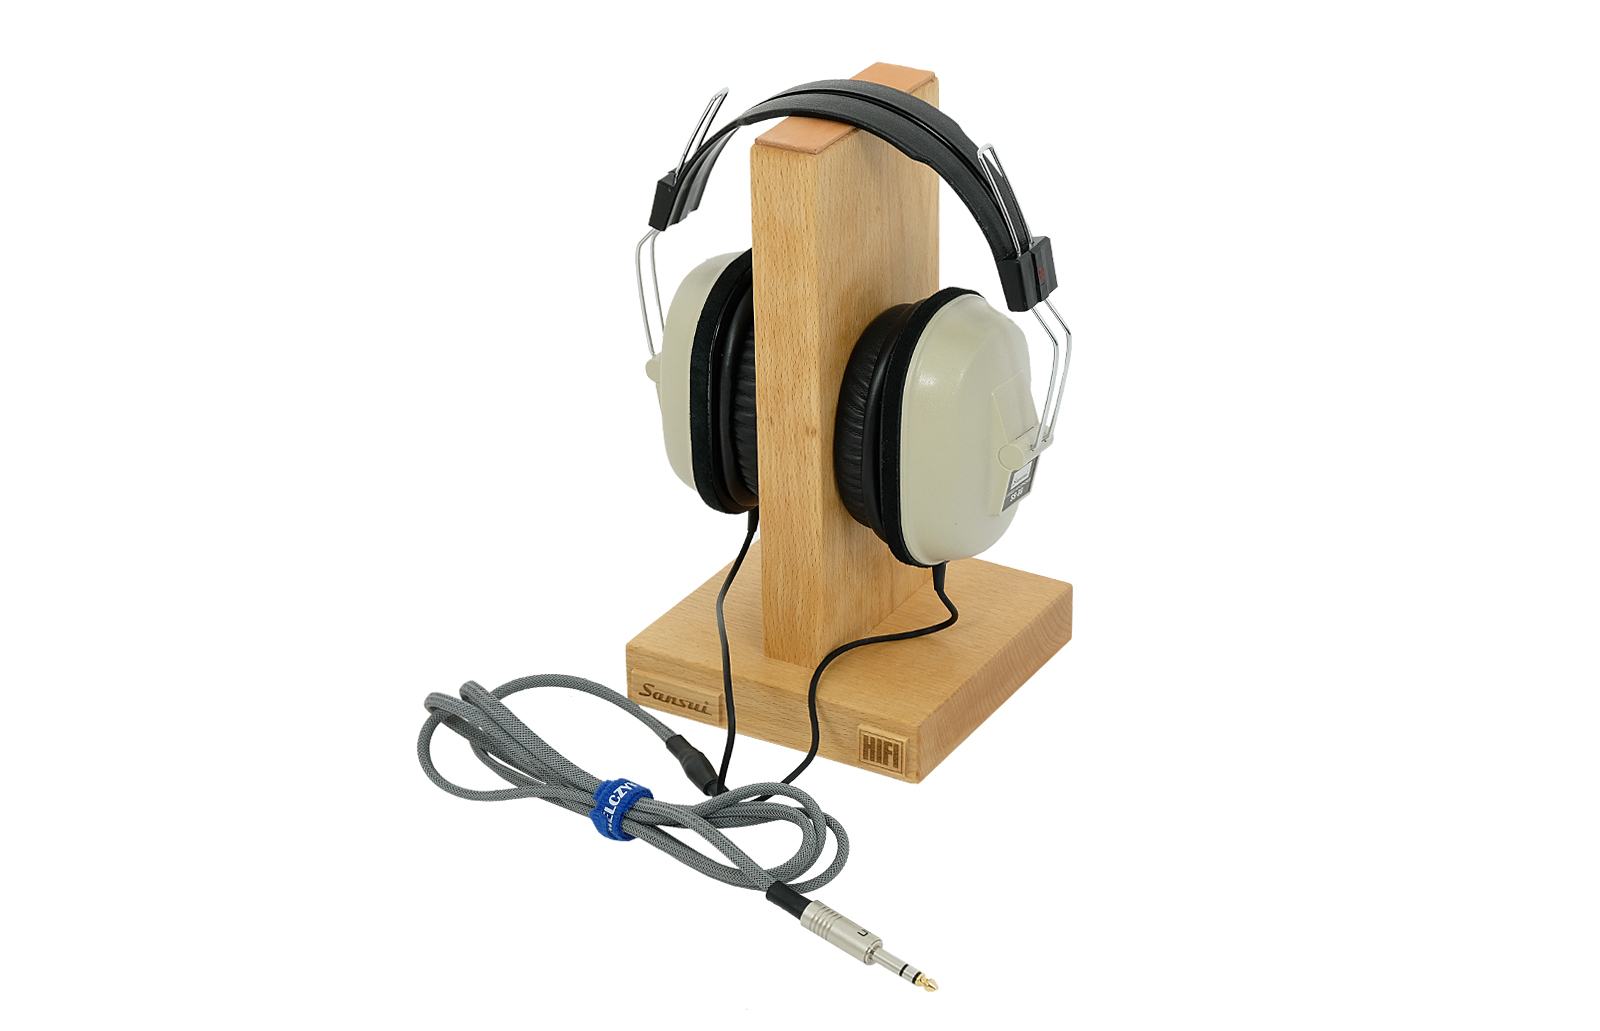 Sansui SS-30 headphones